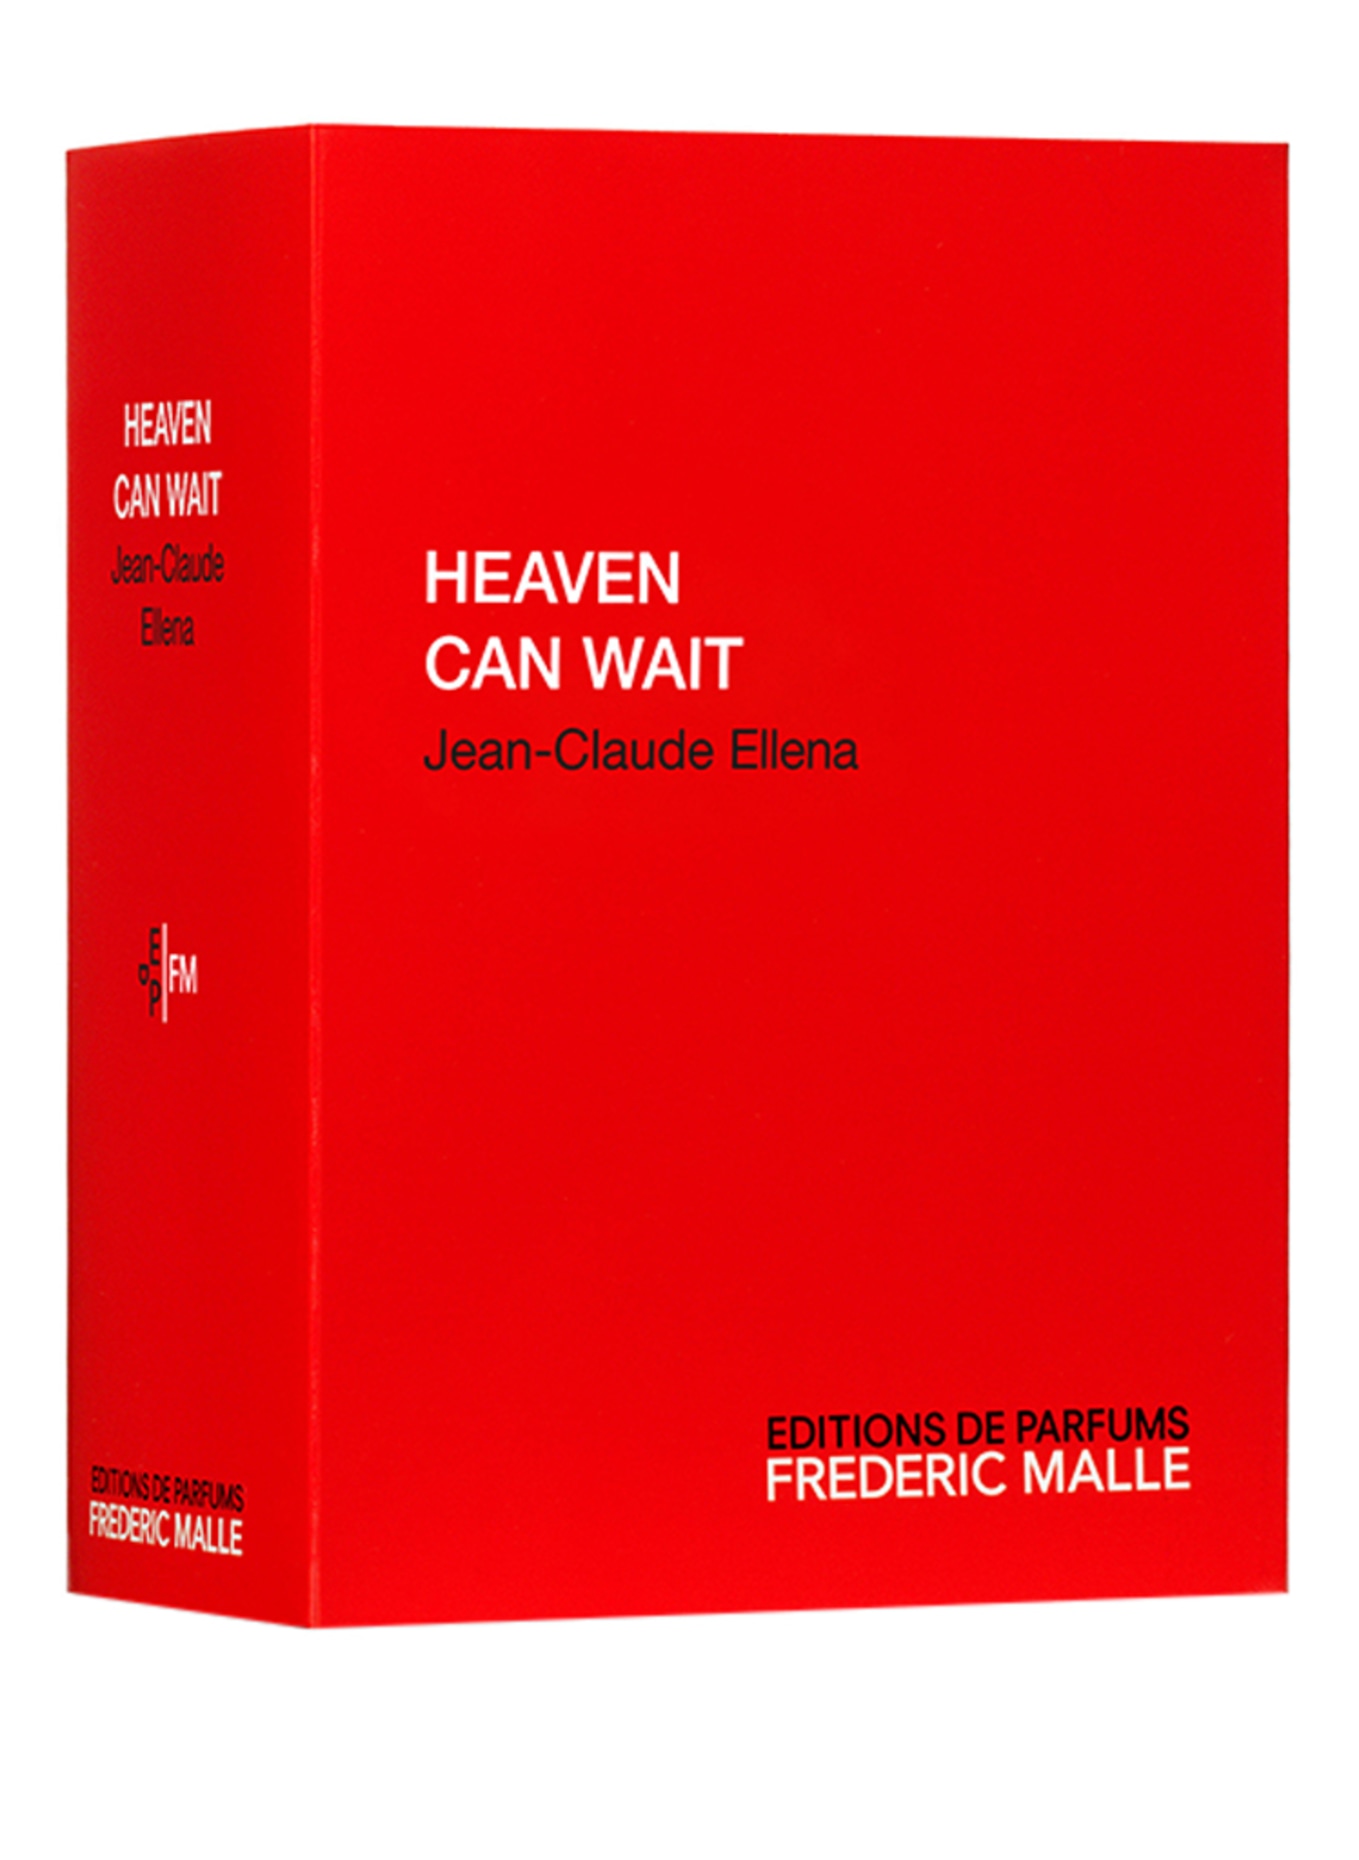 EDITIONS DE PARFUMS FREDERIC MALLE HEAVEN CAN WAIT (Obrázek 2)